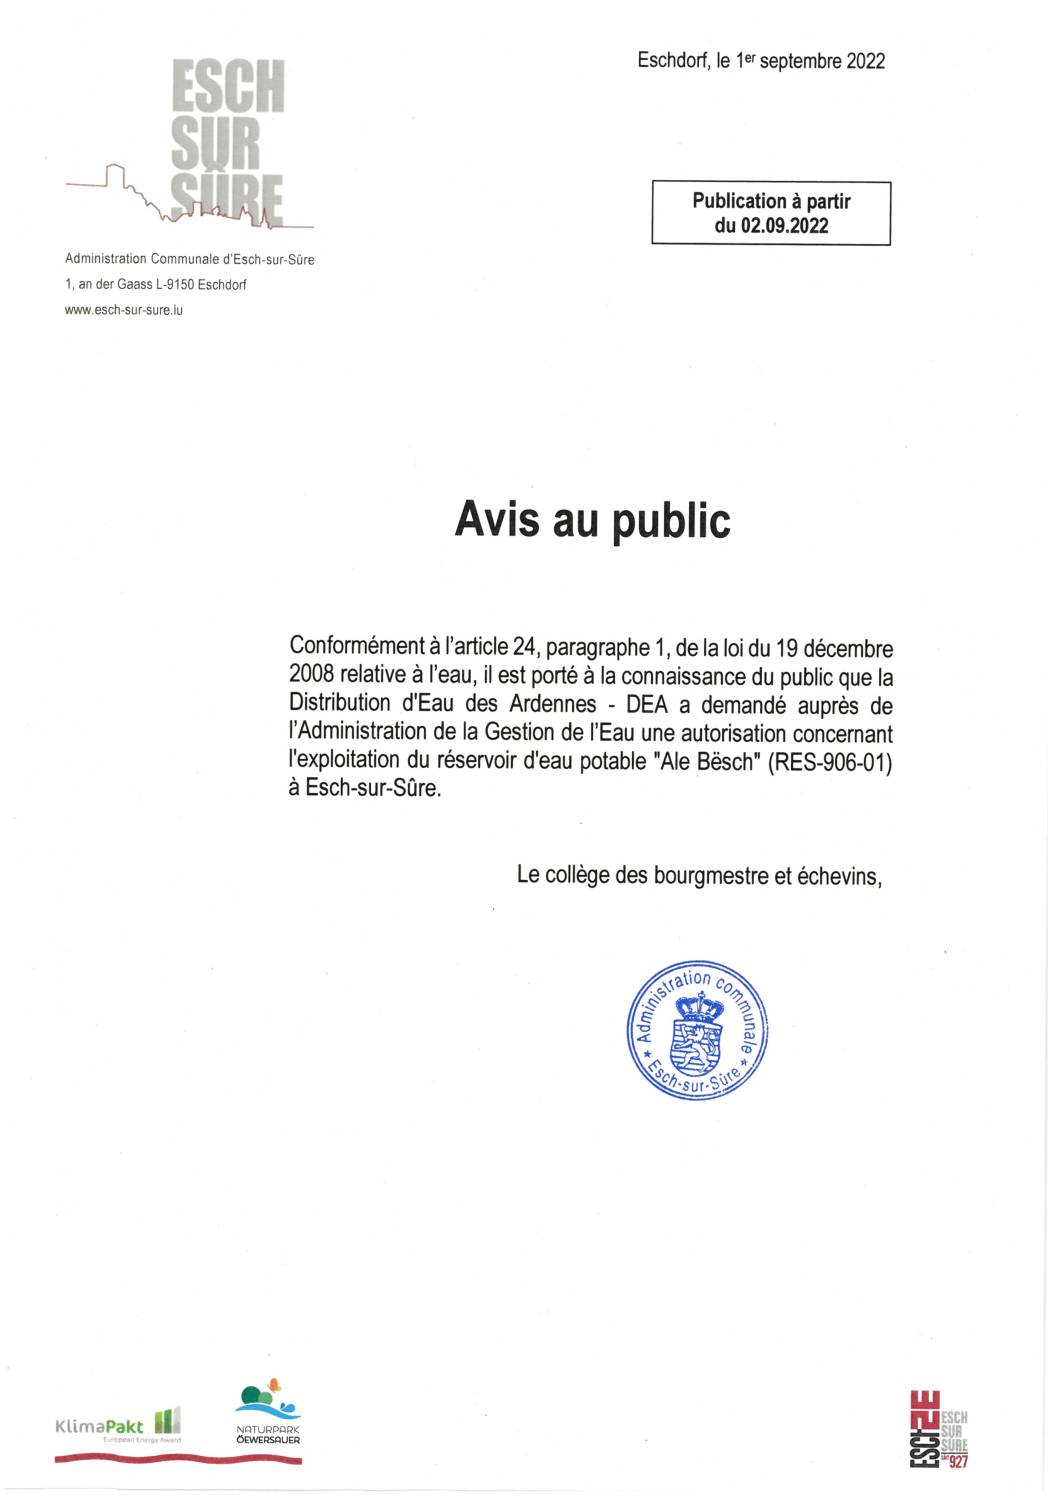 2022.09.02_Demande d'autorisation concernant l'exploitation du réservoir d'eau potable Ale Bësch (RES-906-01) à Esch-sur-Sûre